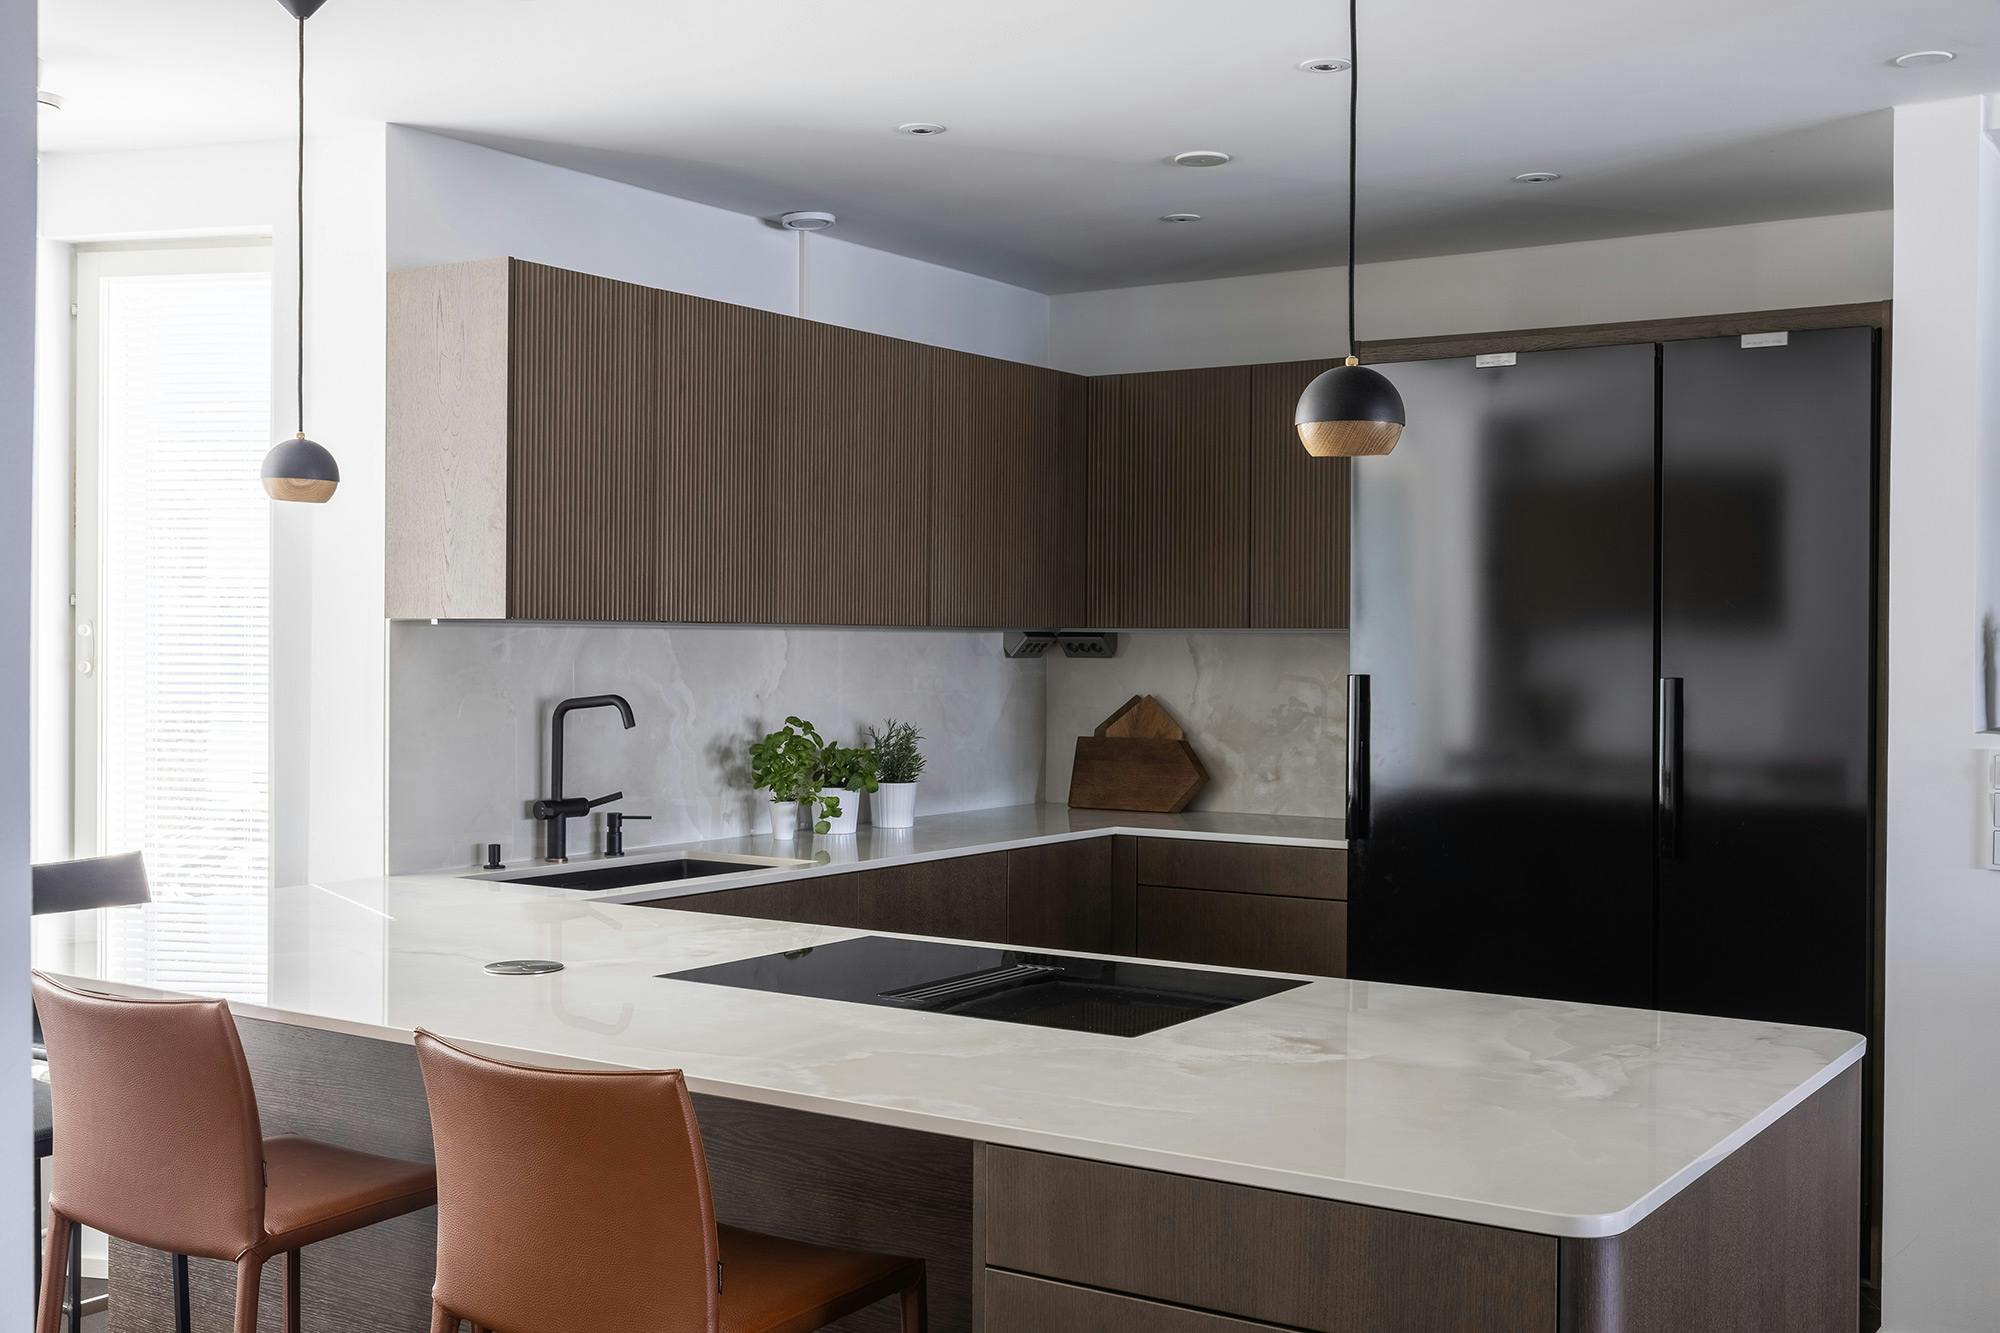 Numero immagine 42 della sezione corrente di Interior designer Katja Suominen chose DKTN Rem countertops for her new kitchen di Cosentino Italia